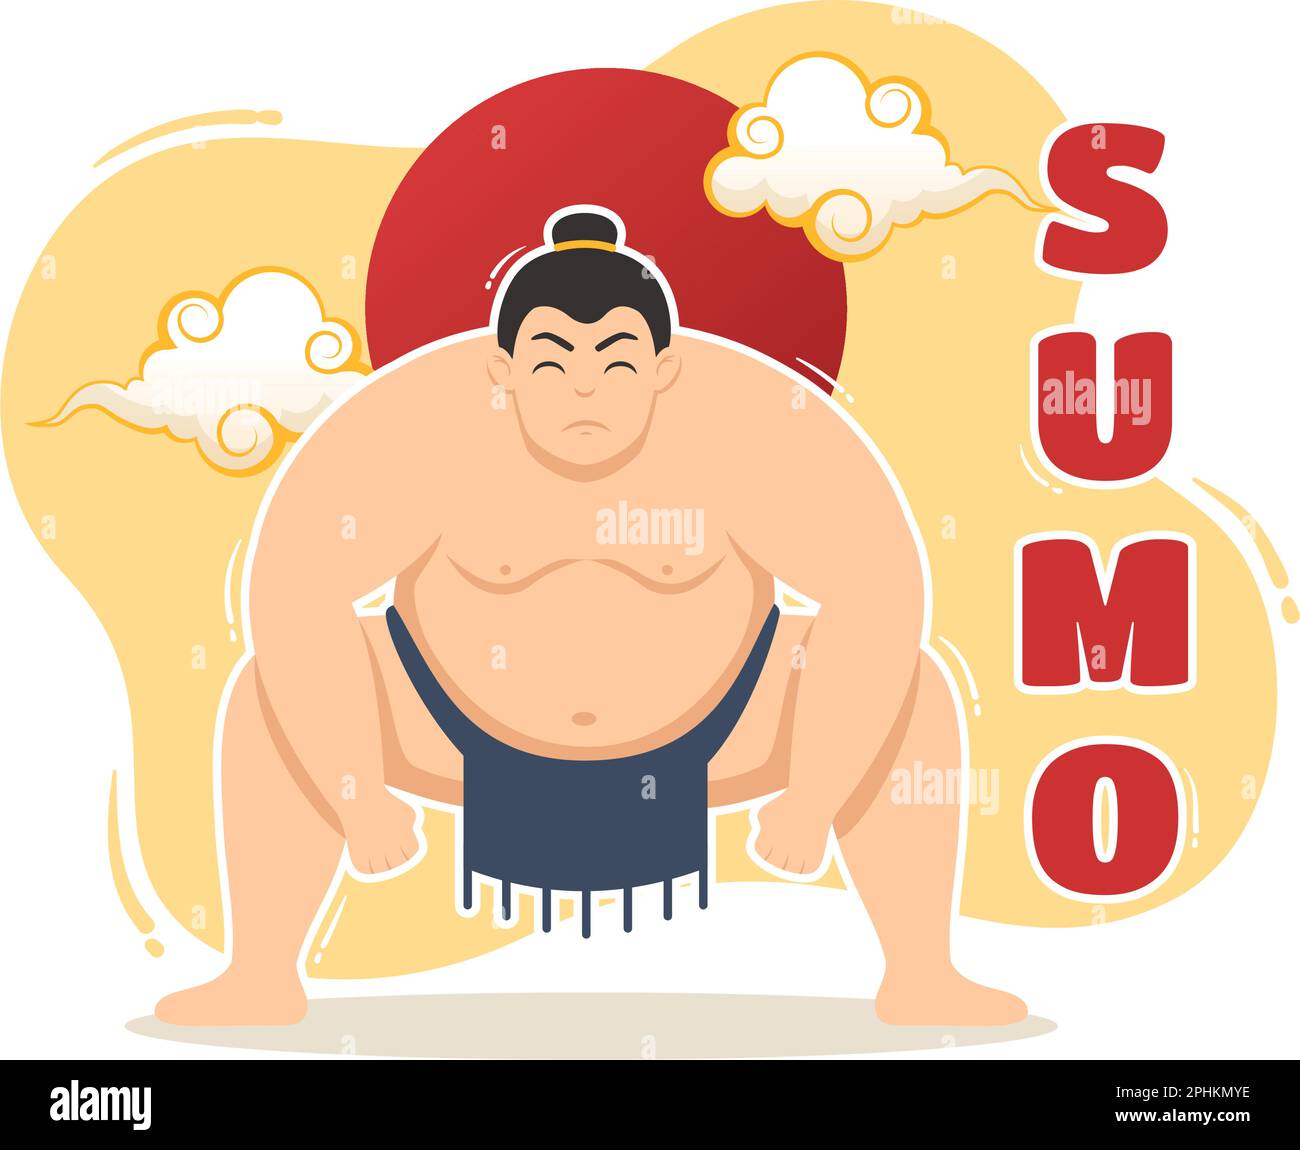 Illustrazione del lottatore di sumo con l'arte marziale tradizionale giapponese combattente e l'attività sportiva in modelli di landing page disegnati a mano del cartoon piano Illustrazione Vettoriale